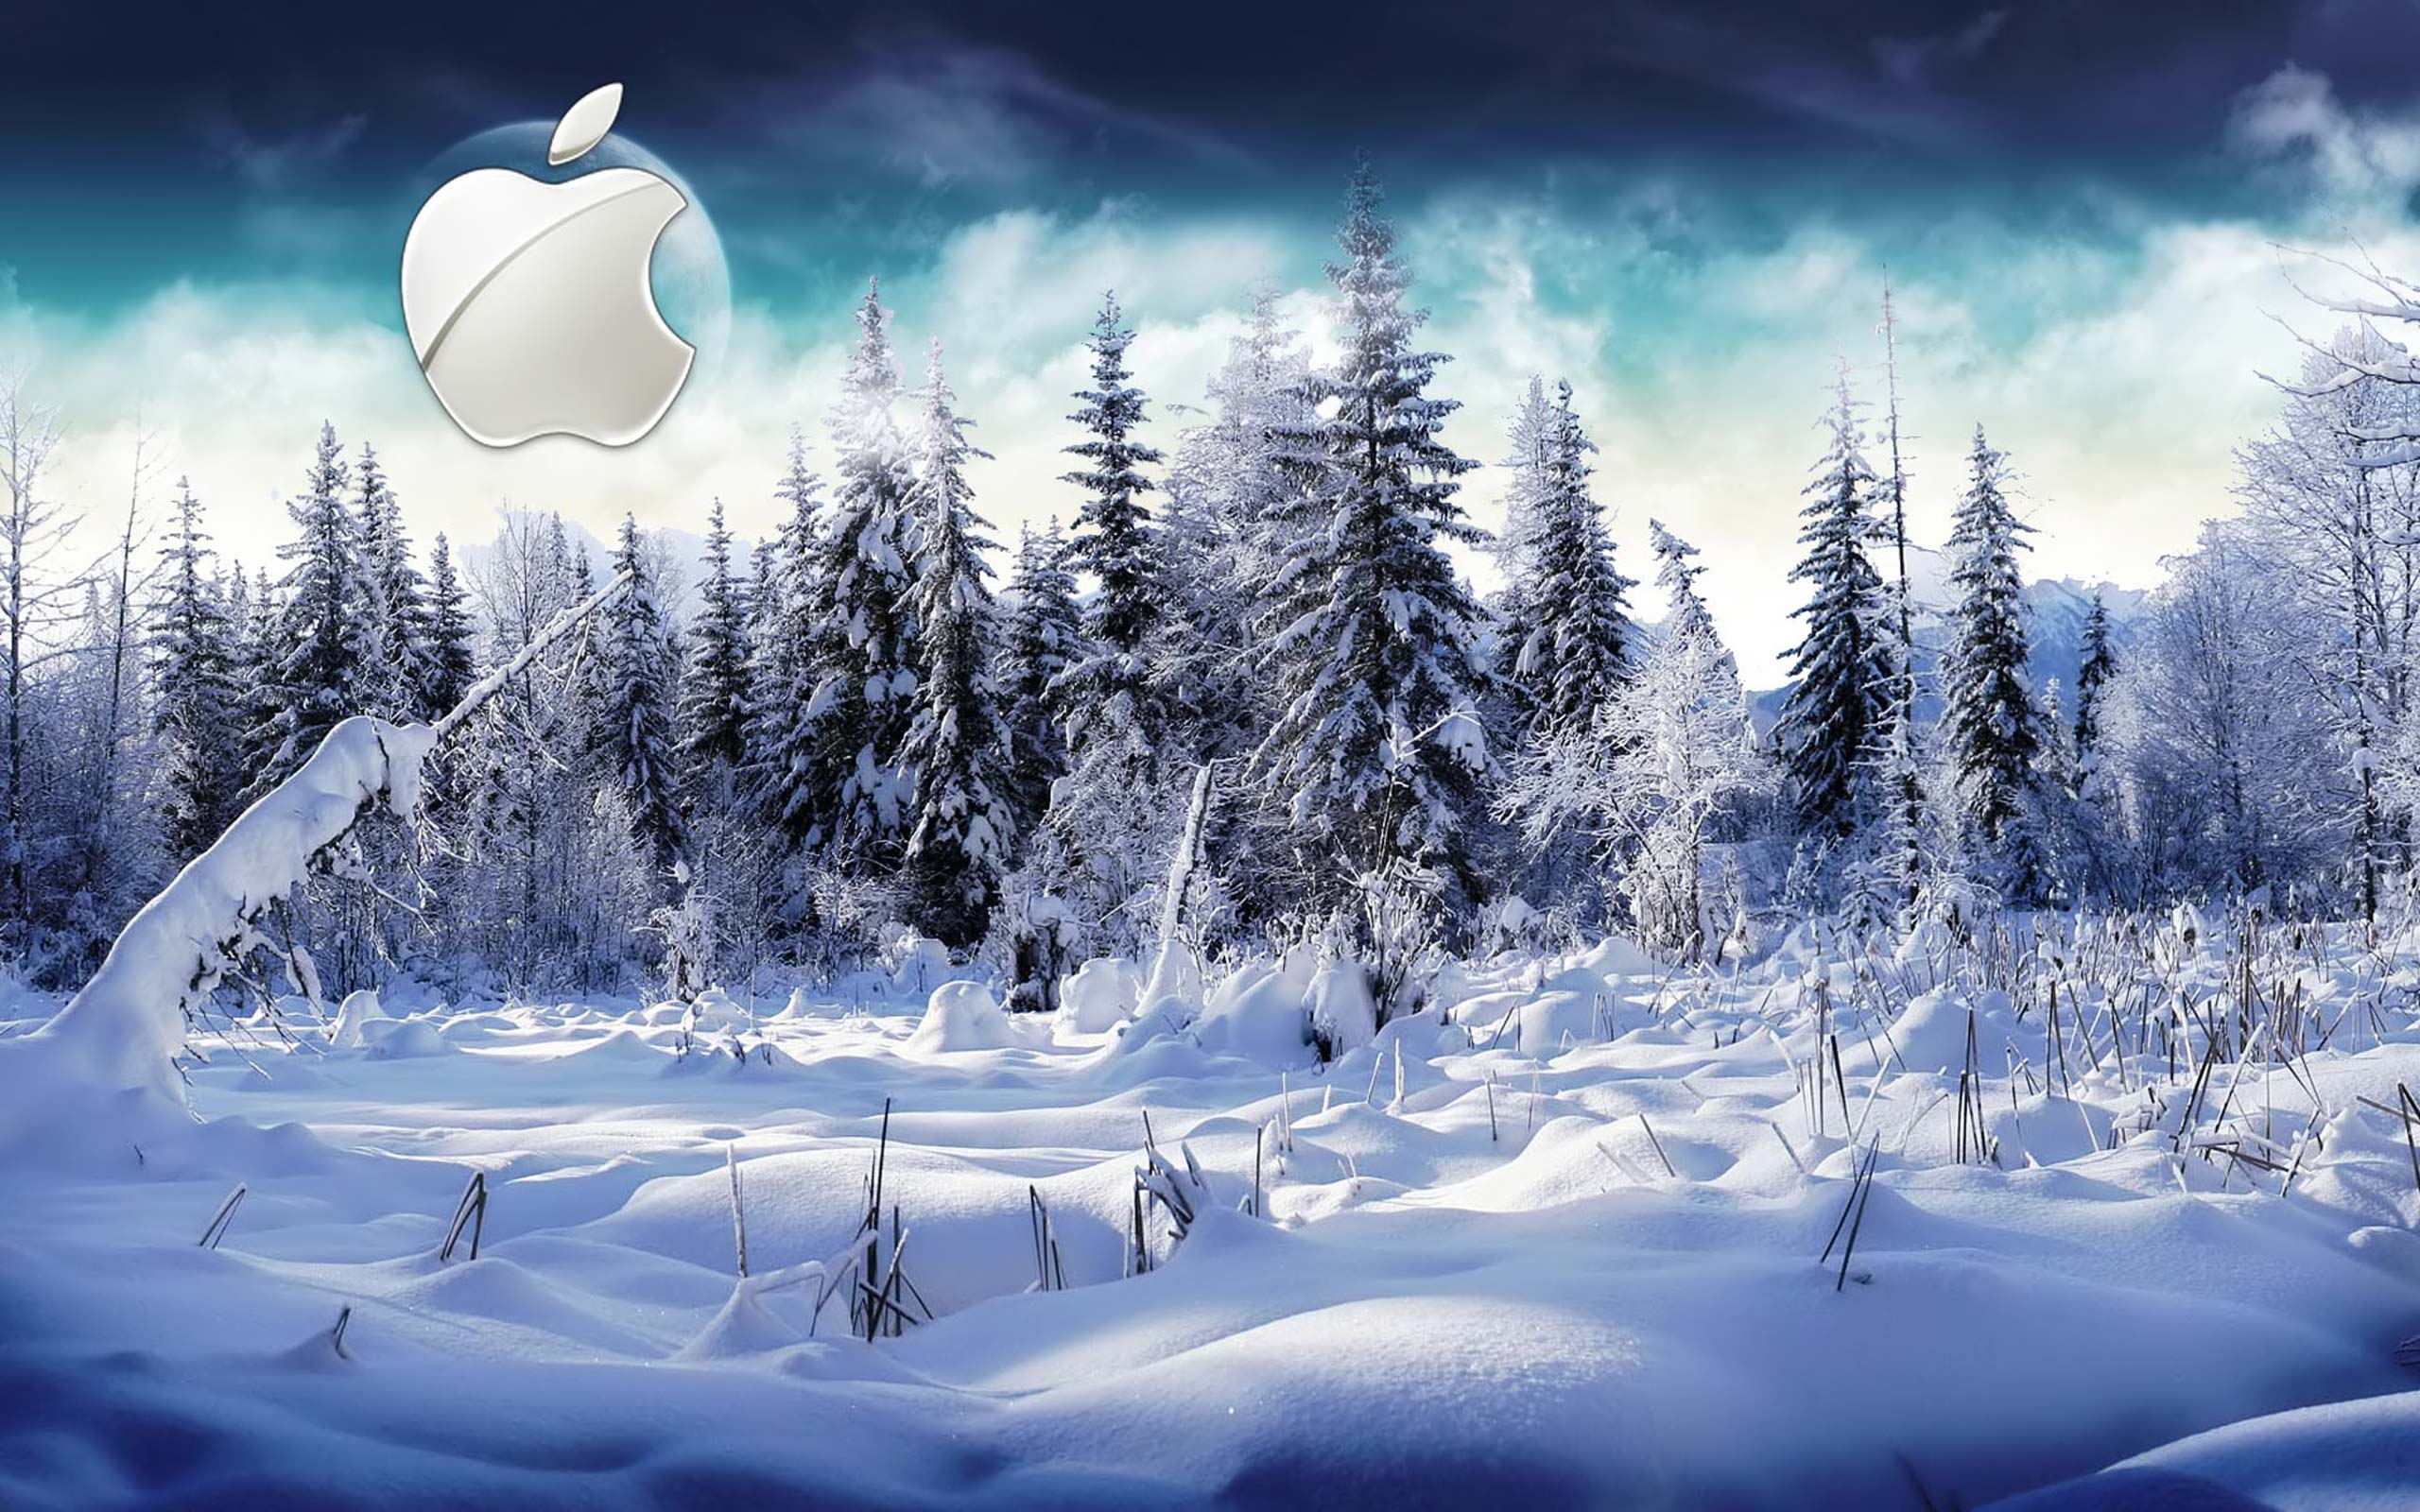 Desktop Wallpaper · Gallery · Computers · Winter Apple Mac